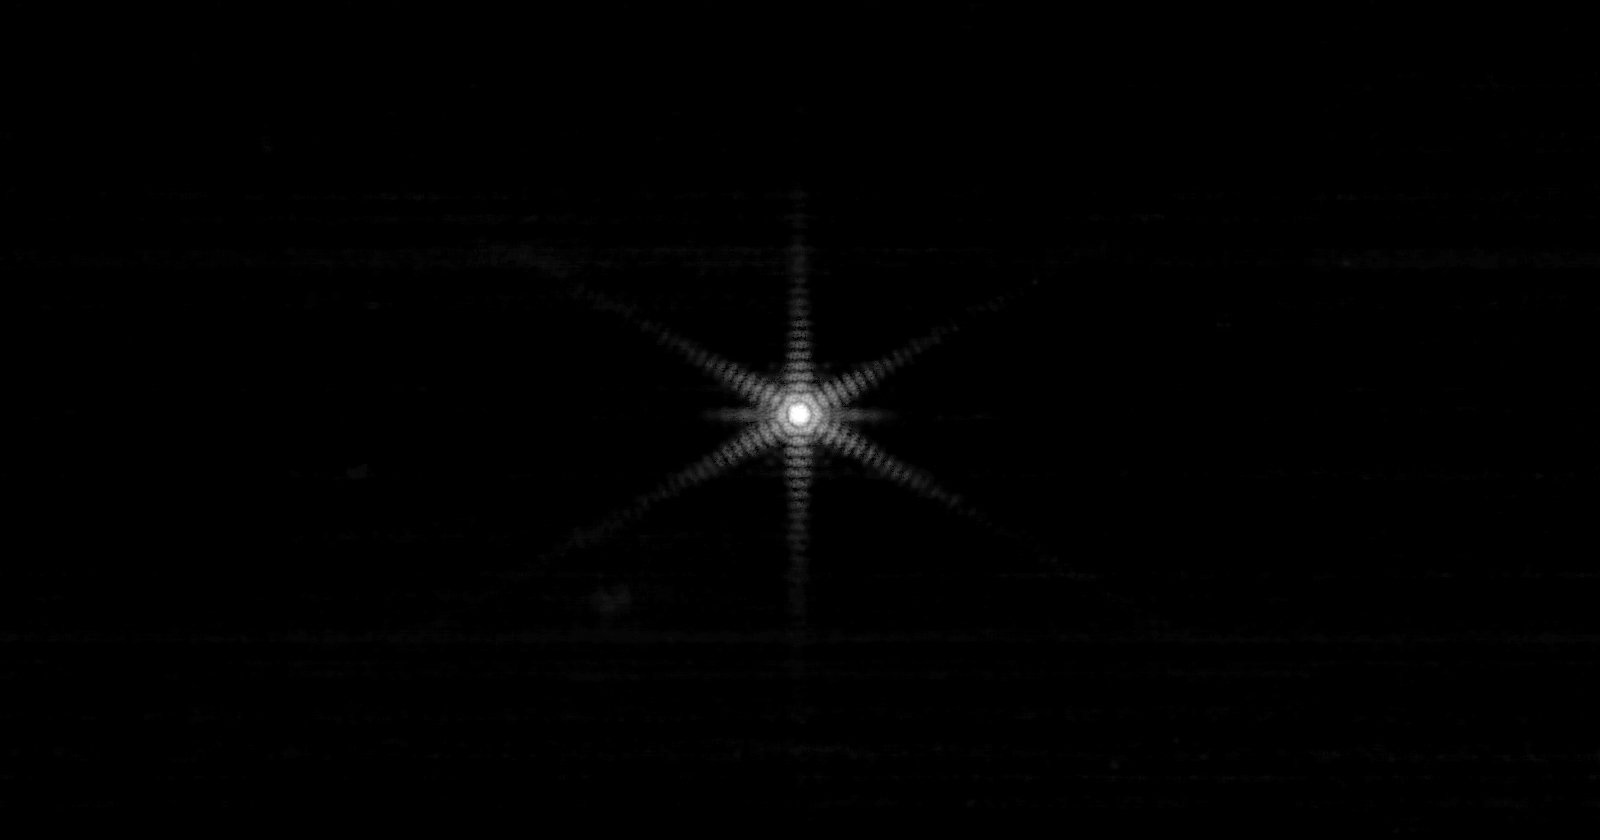 Il telescopio spaziale James Webb scatta la prima immagine con specchi allineati